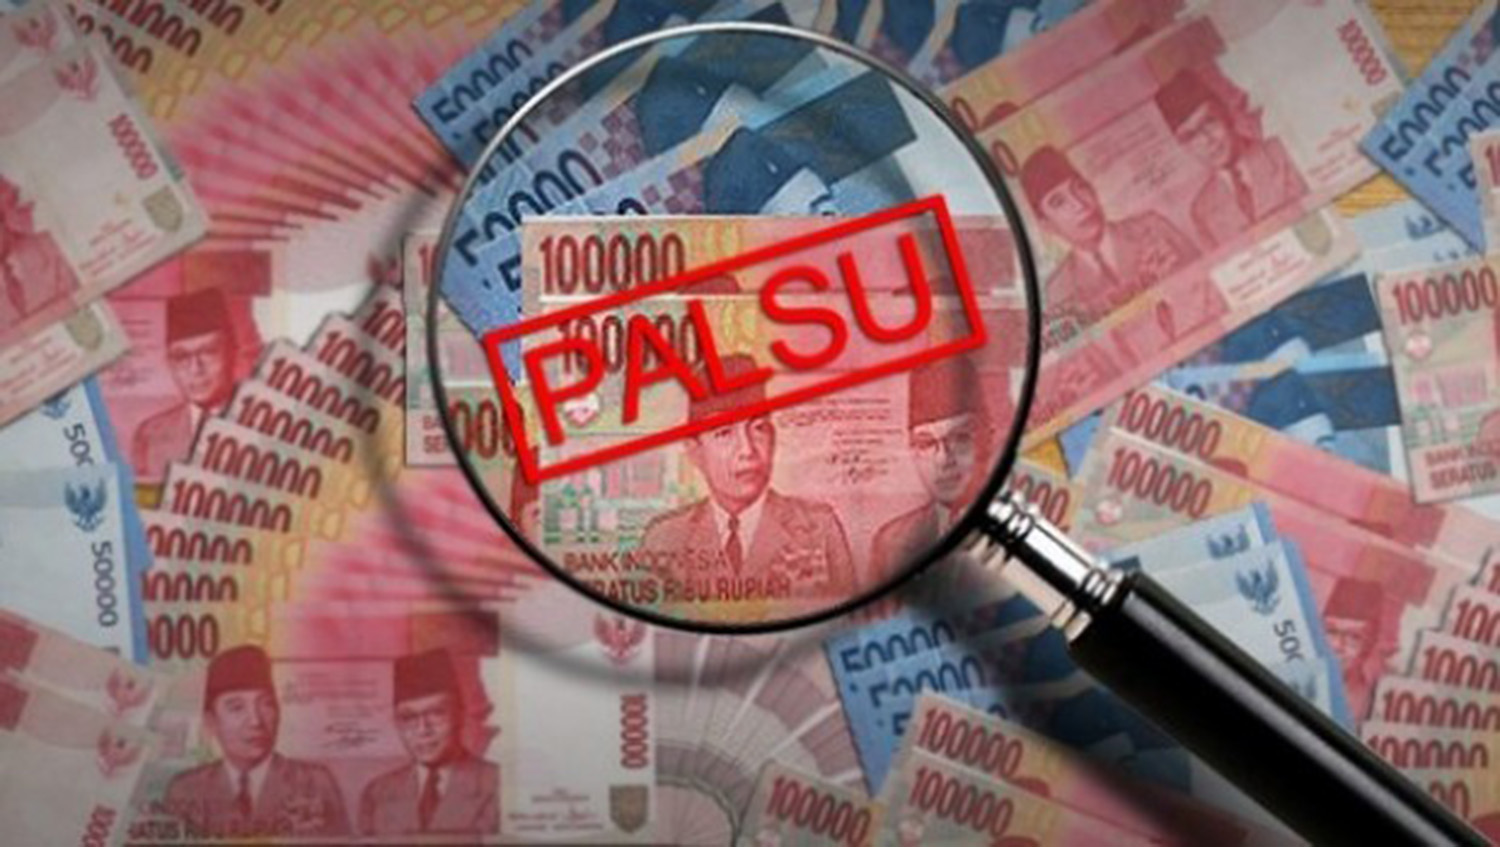 Nataru BI Lampung Siapkan Rp1,5 Triliun, Ini Cara Siasati Uang Palsu